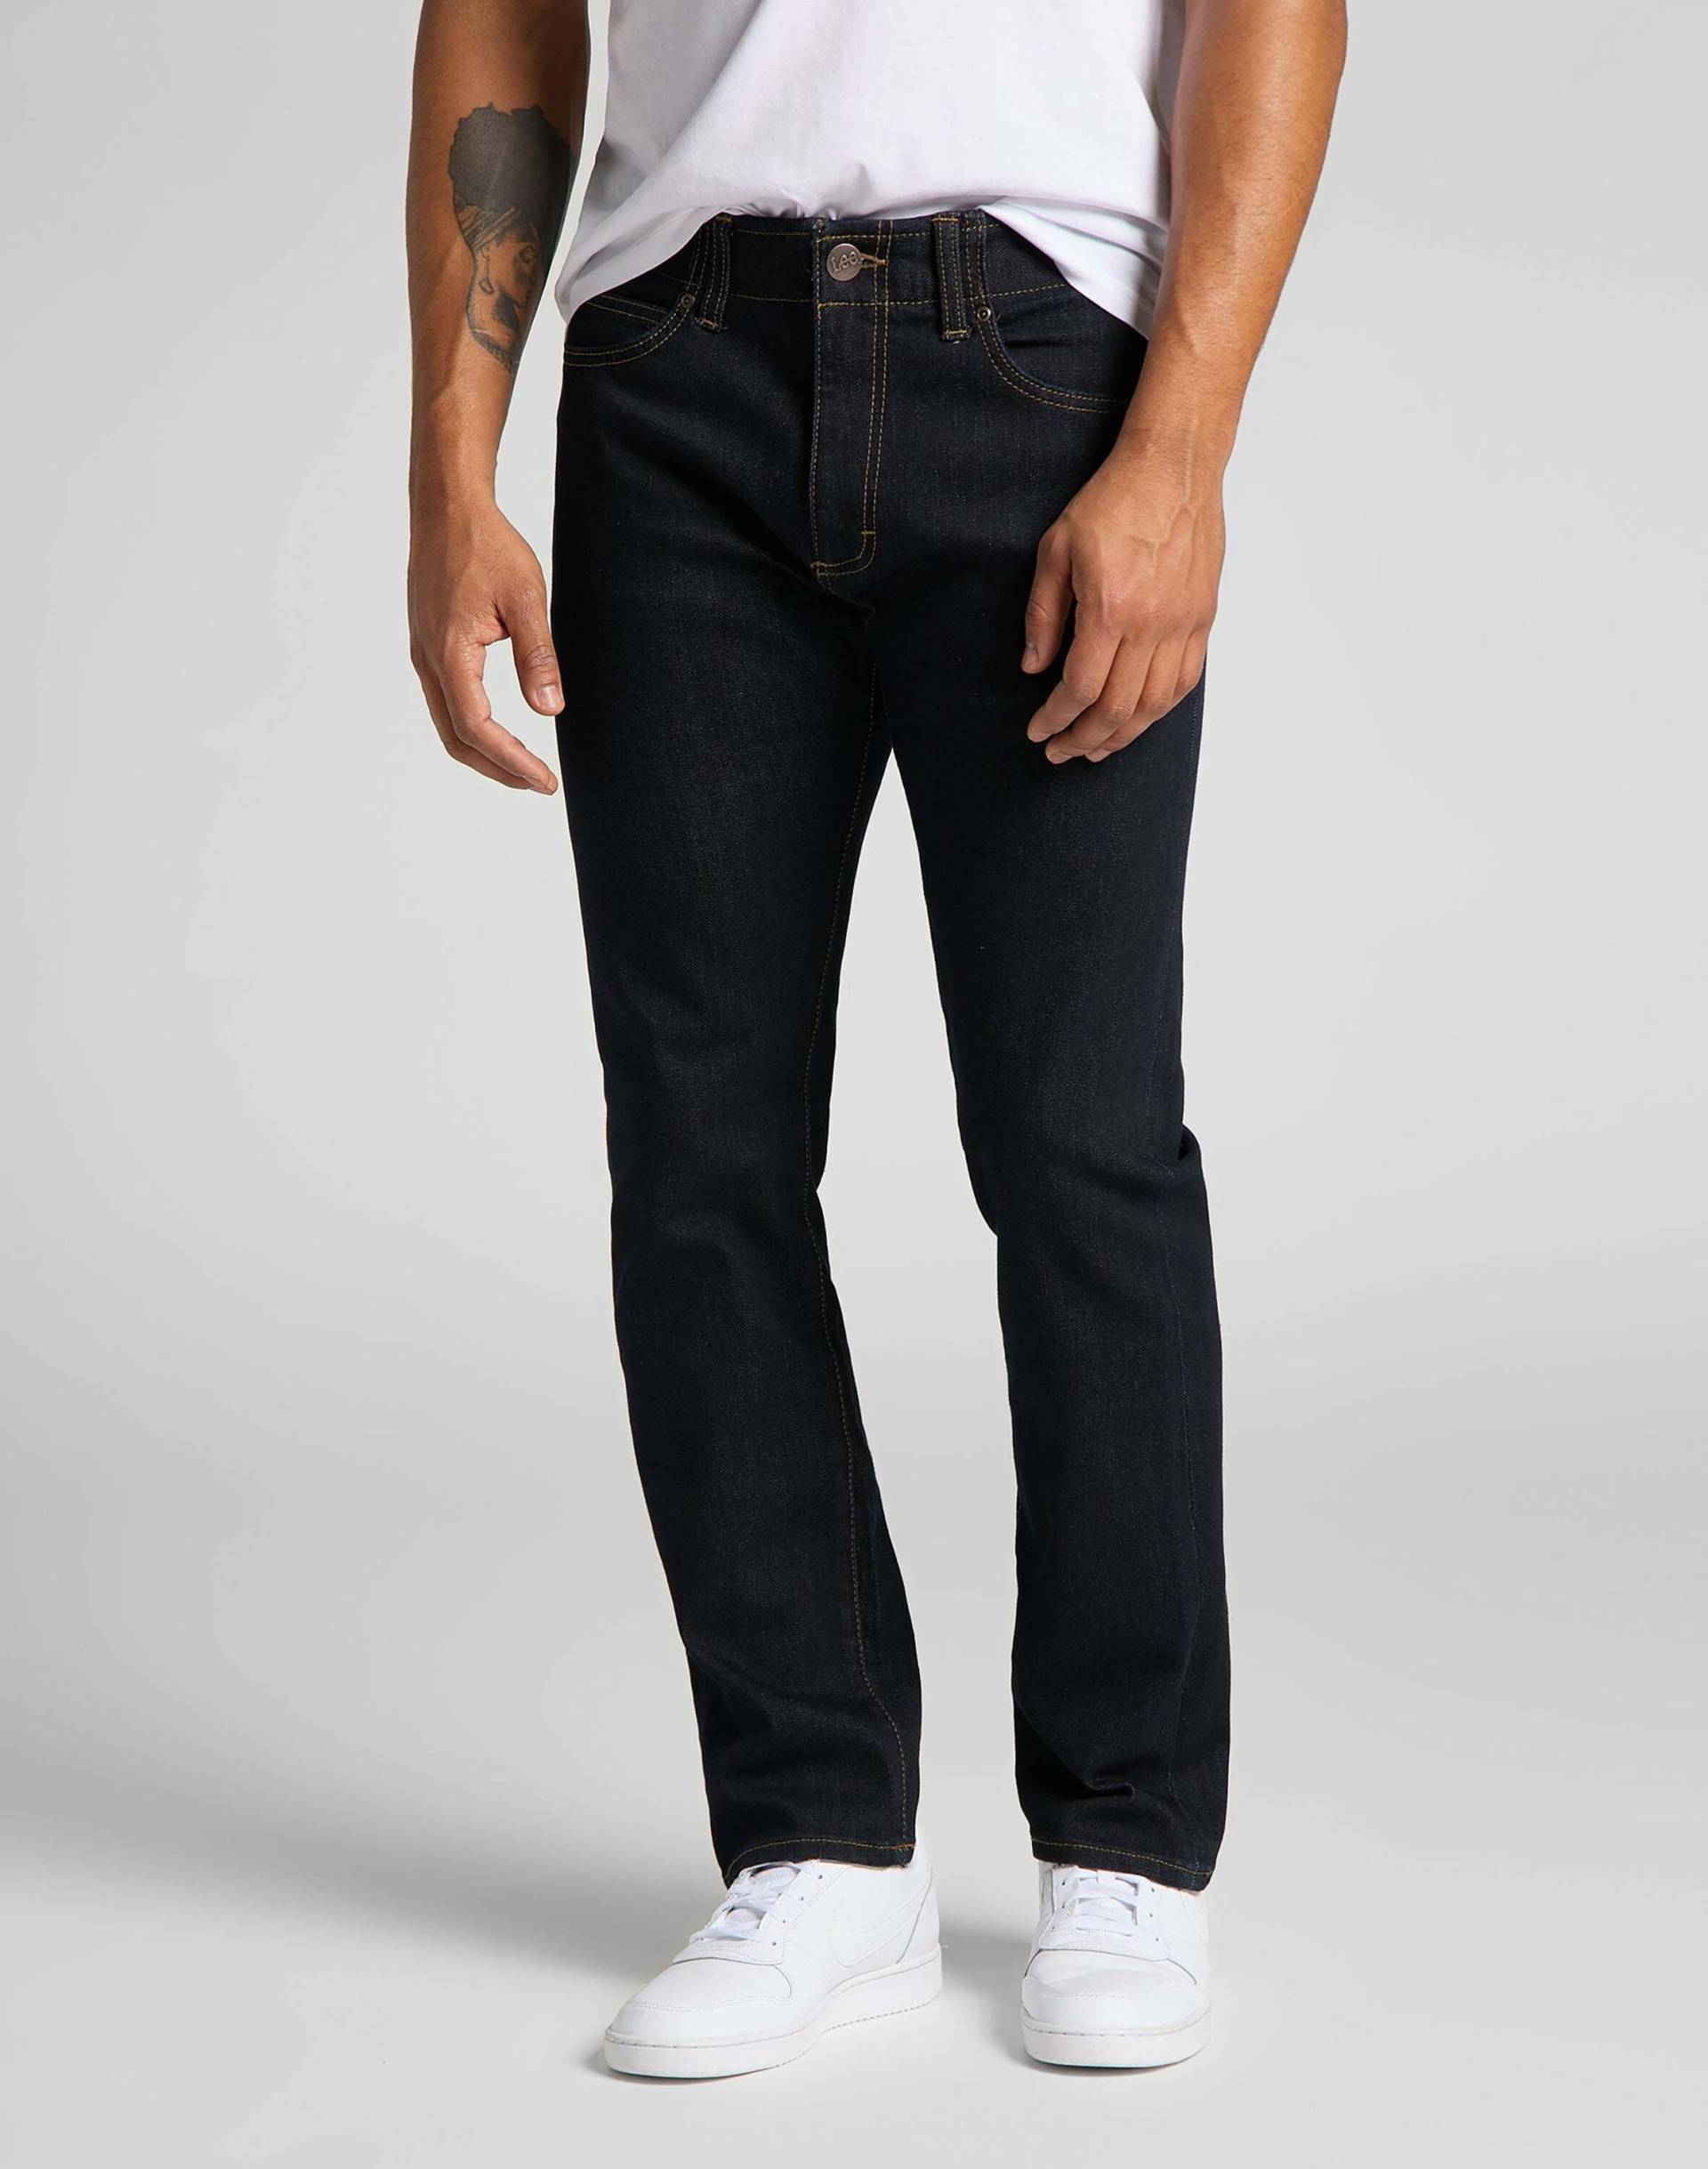 Jeans Slim Fit Mvp Herren Blau L34/W36 von Lee